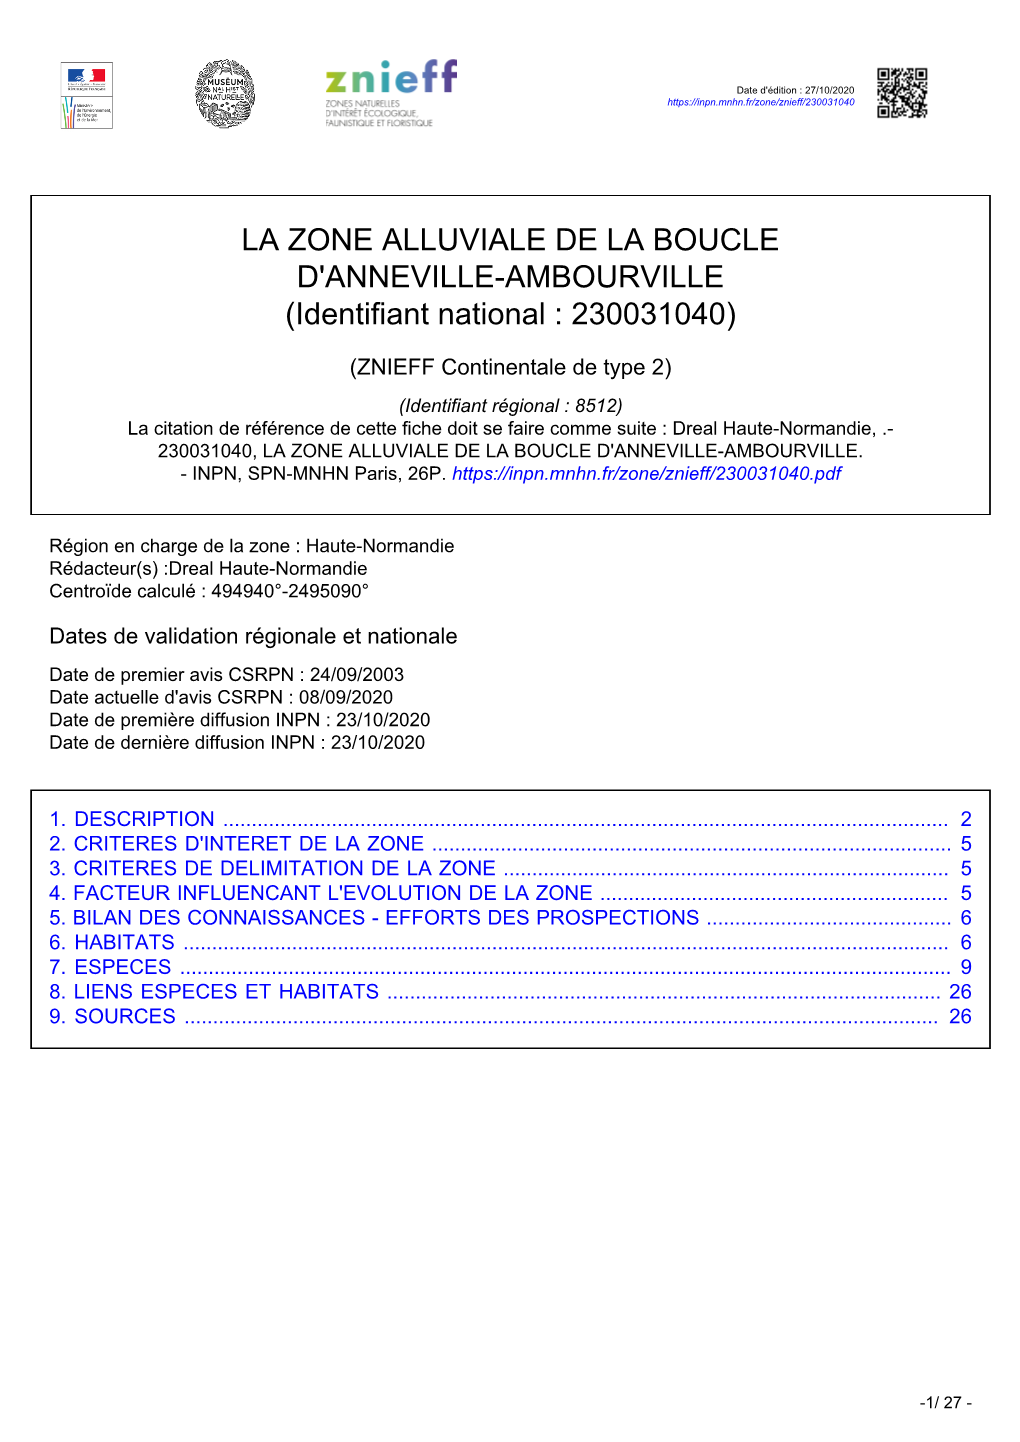 LA ZONE ALLUVIALE DE LA BOUCLE D'anneville-AMBOURVILLE (Identifiant National : 230031040)